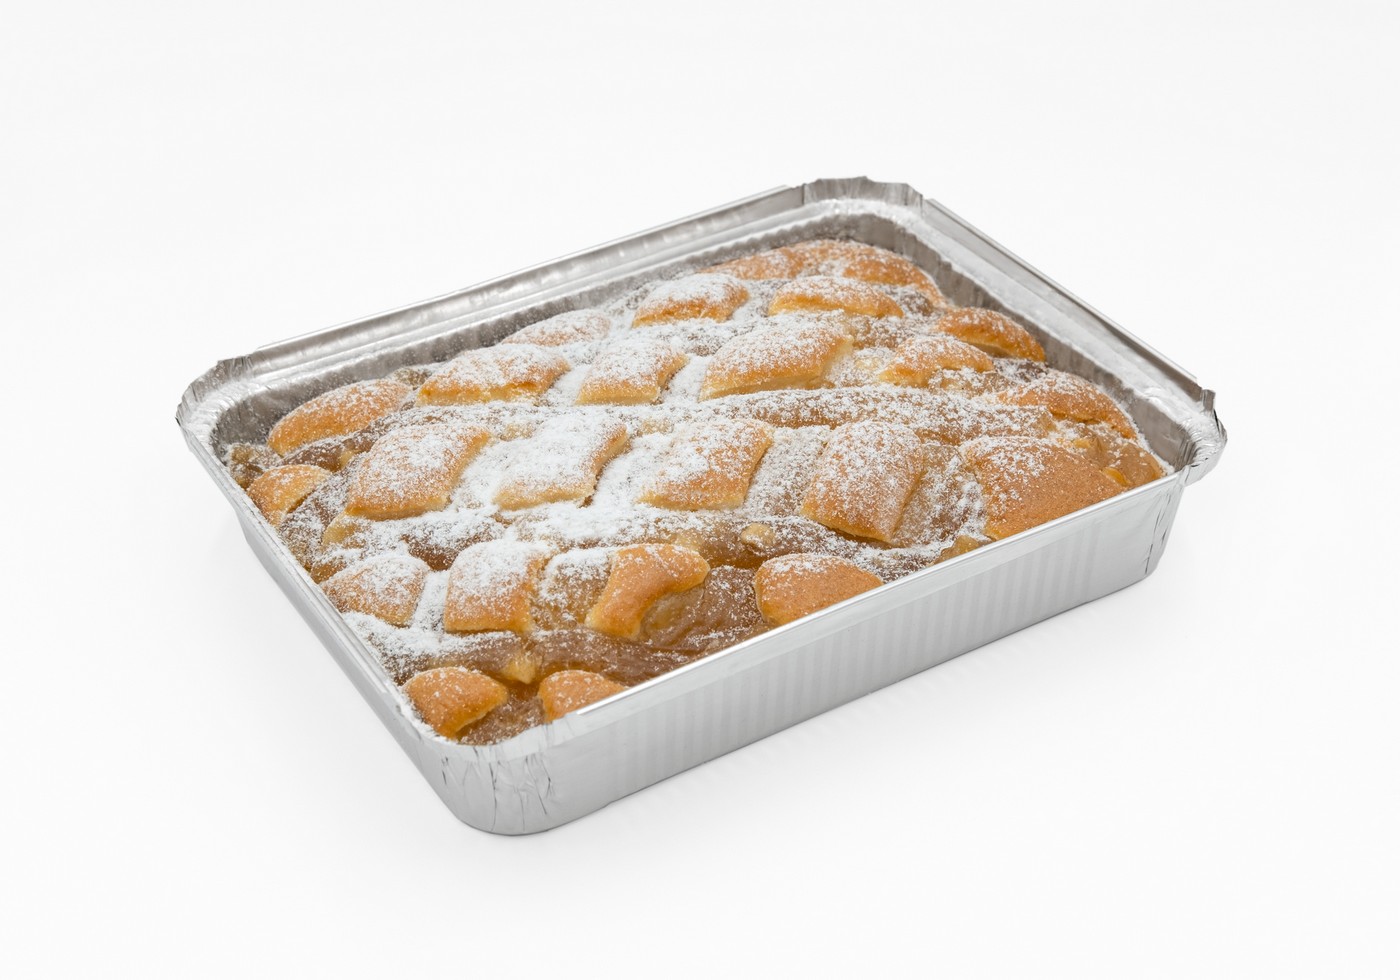 Домашний пирог с яблоком, упаковка 1,2кг (2 пирога по 600гр)